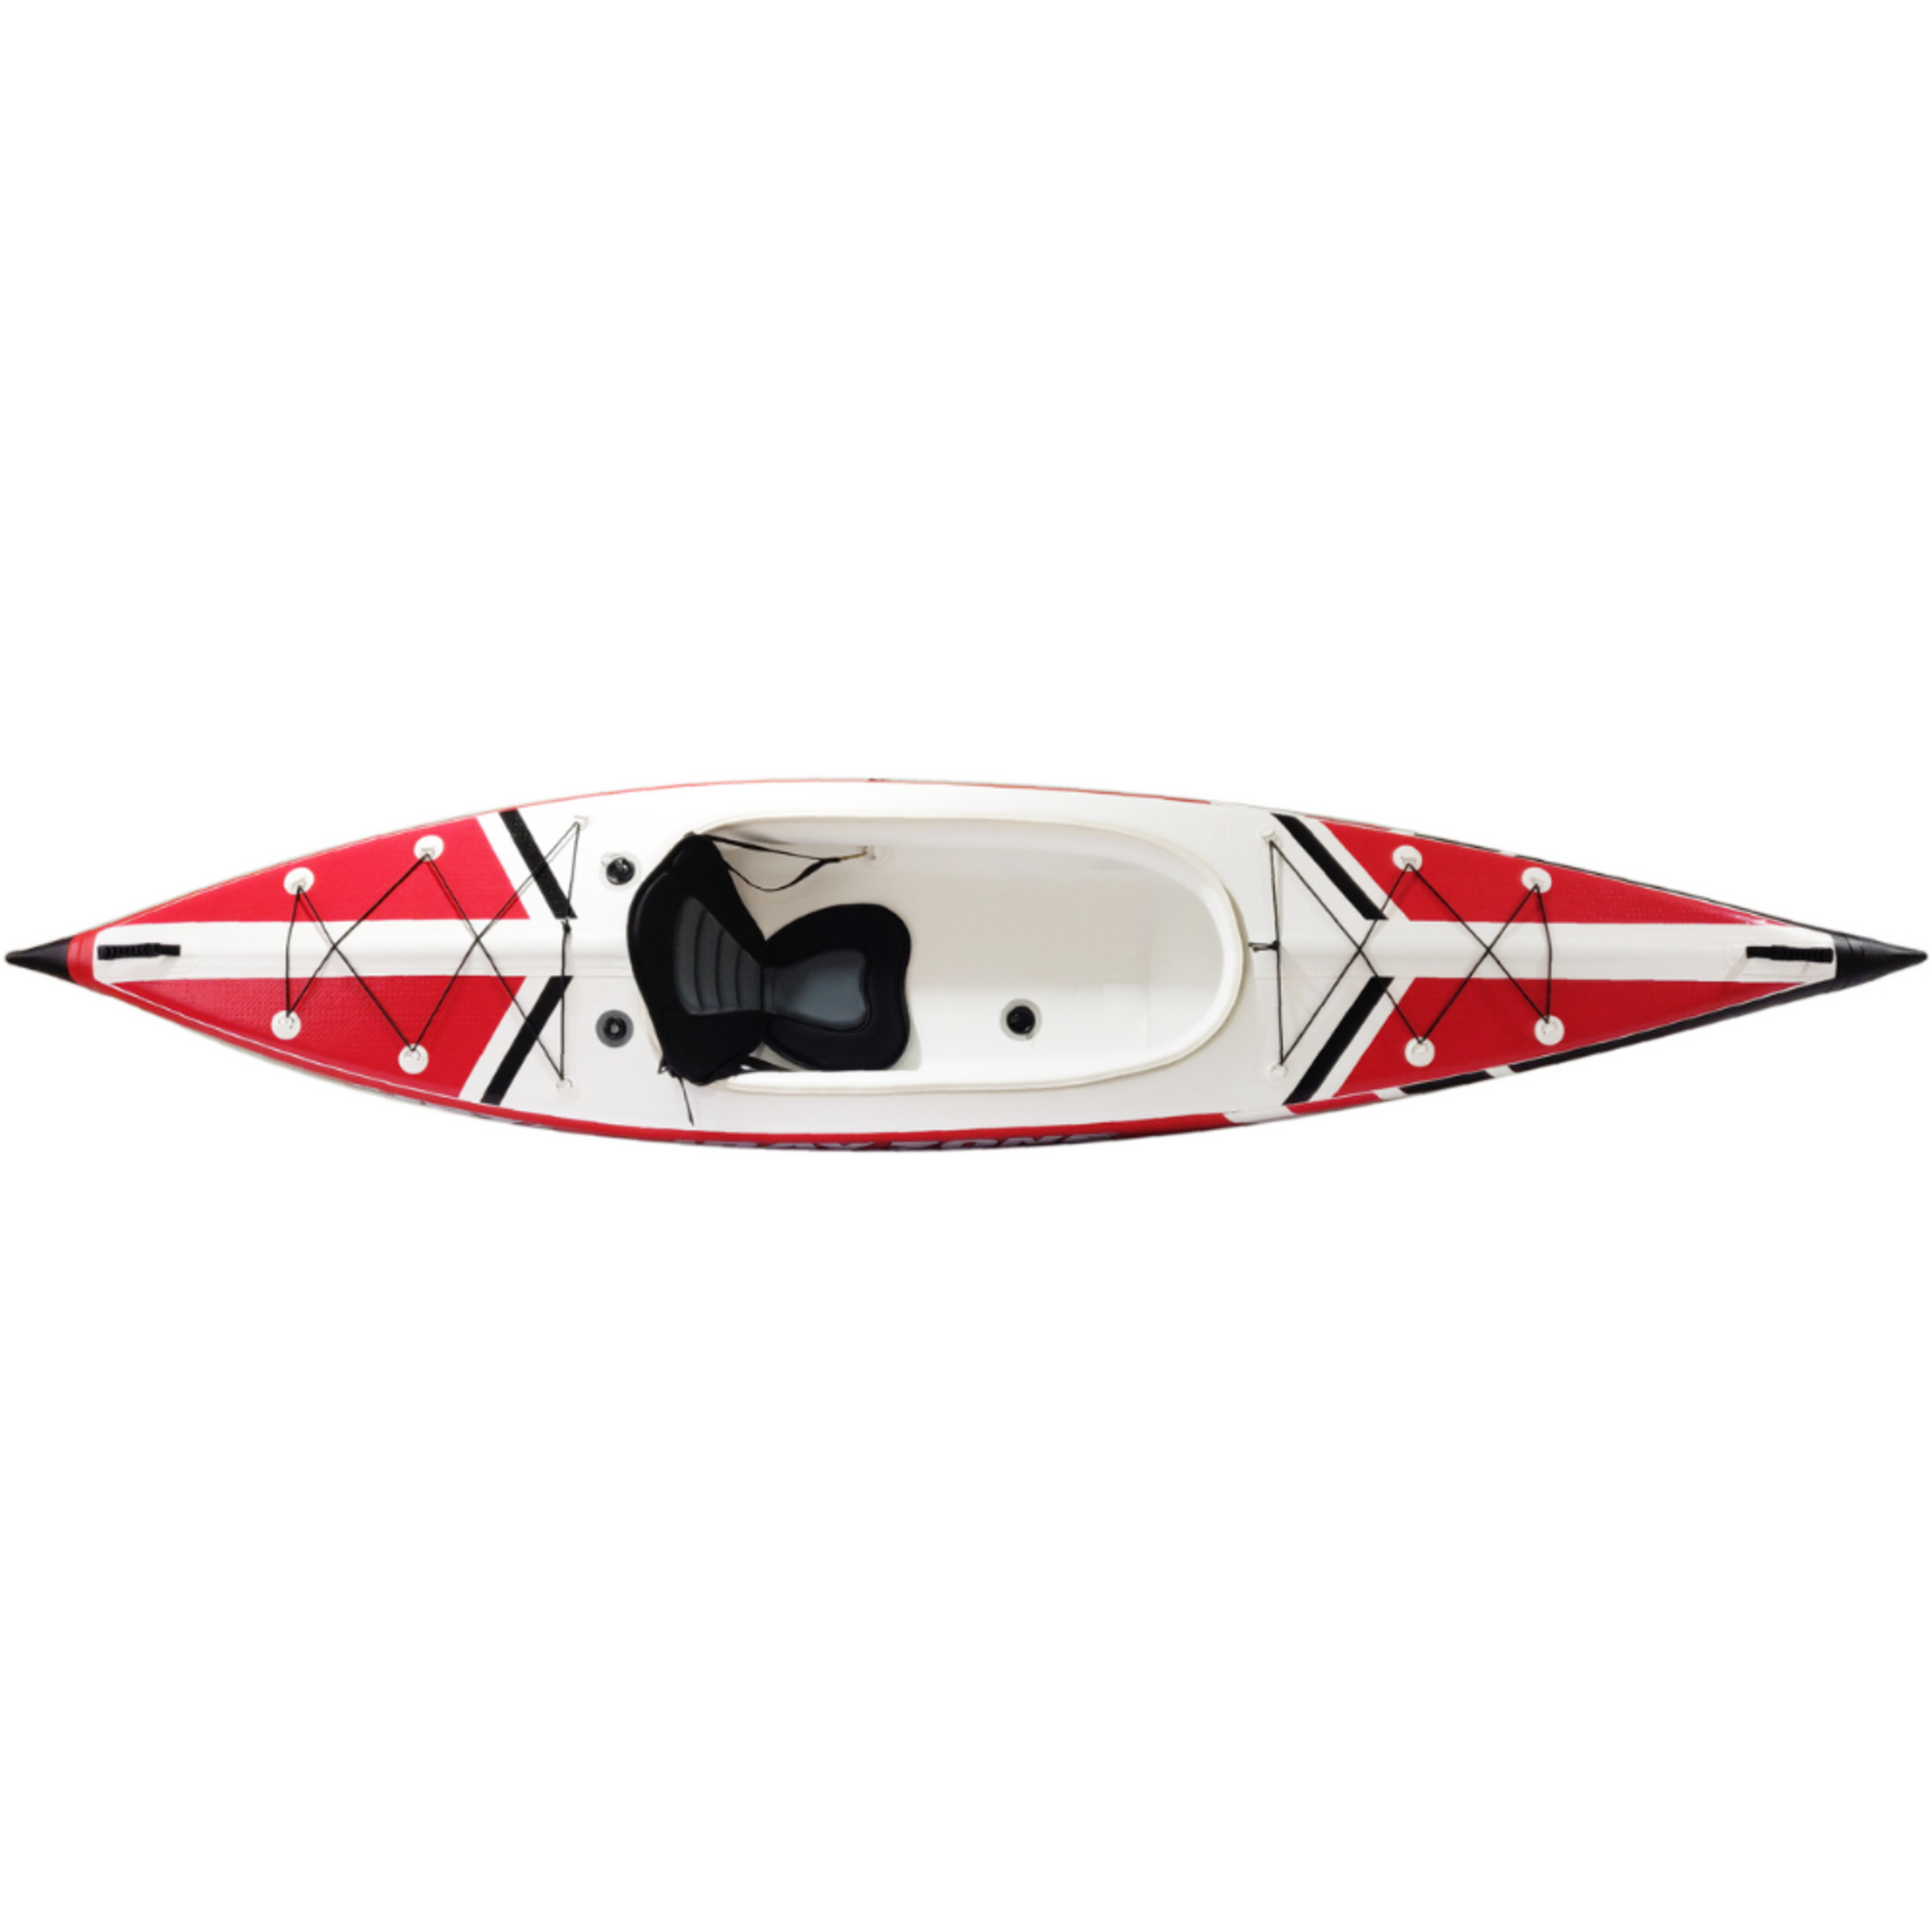 Kayak Hinchable 1 Plaza Jbay.zone V-shape Mono Enteramente En Drop-stitch - Blanco/Rojo - Kayak individual MKP